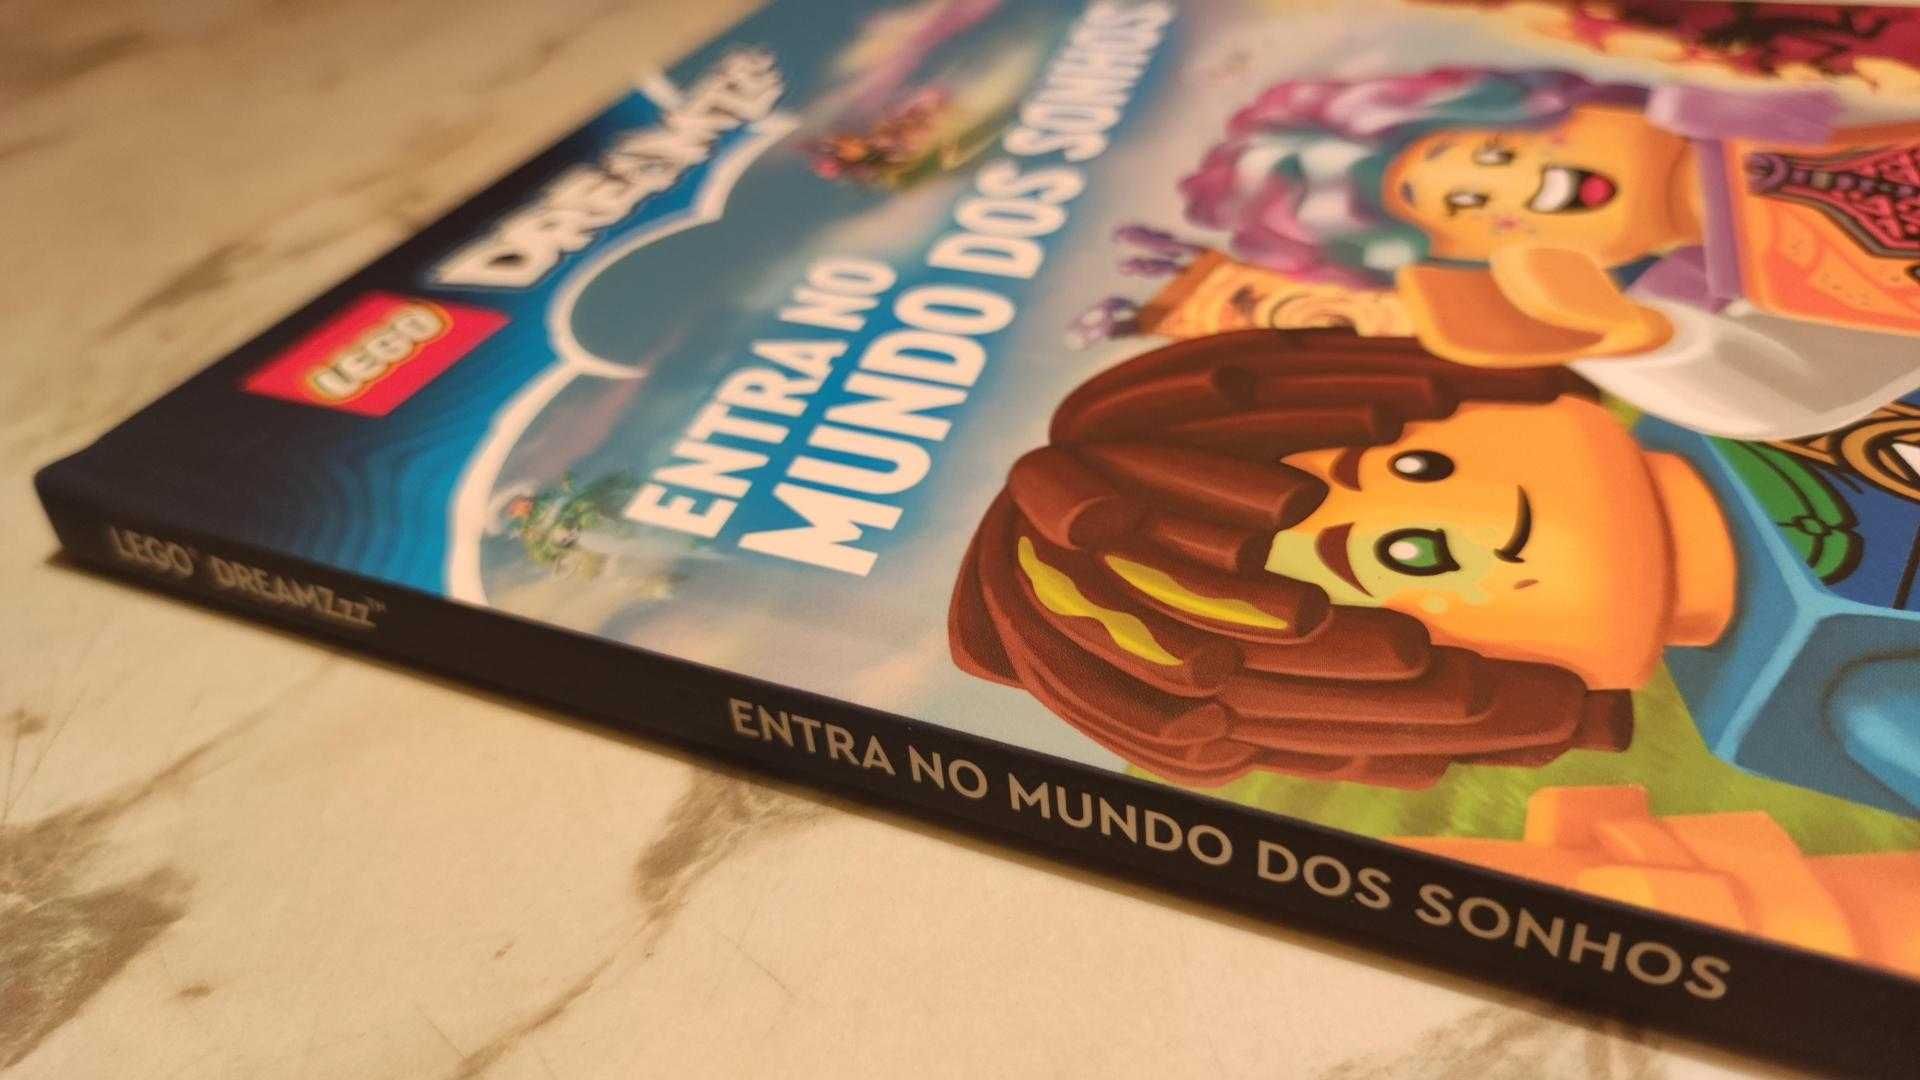 Livro Lego Dreamz "Entra no Mundo dos Sonhos"